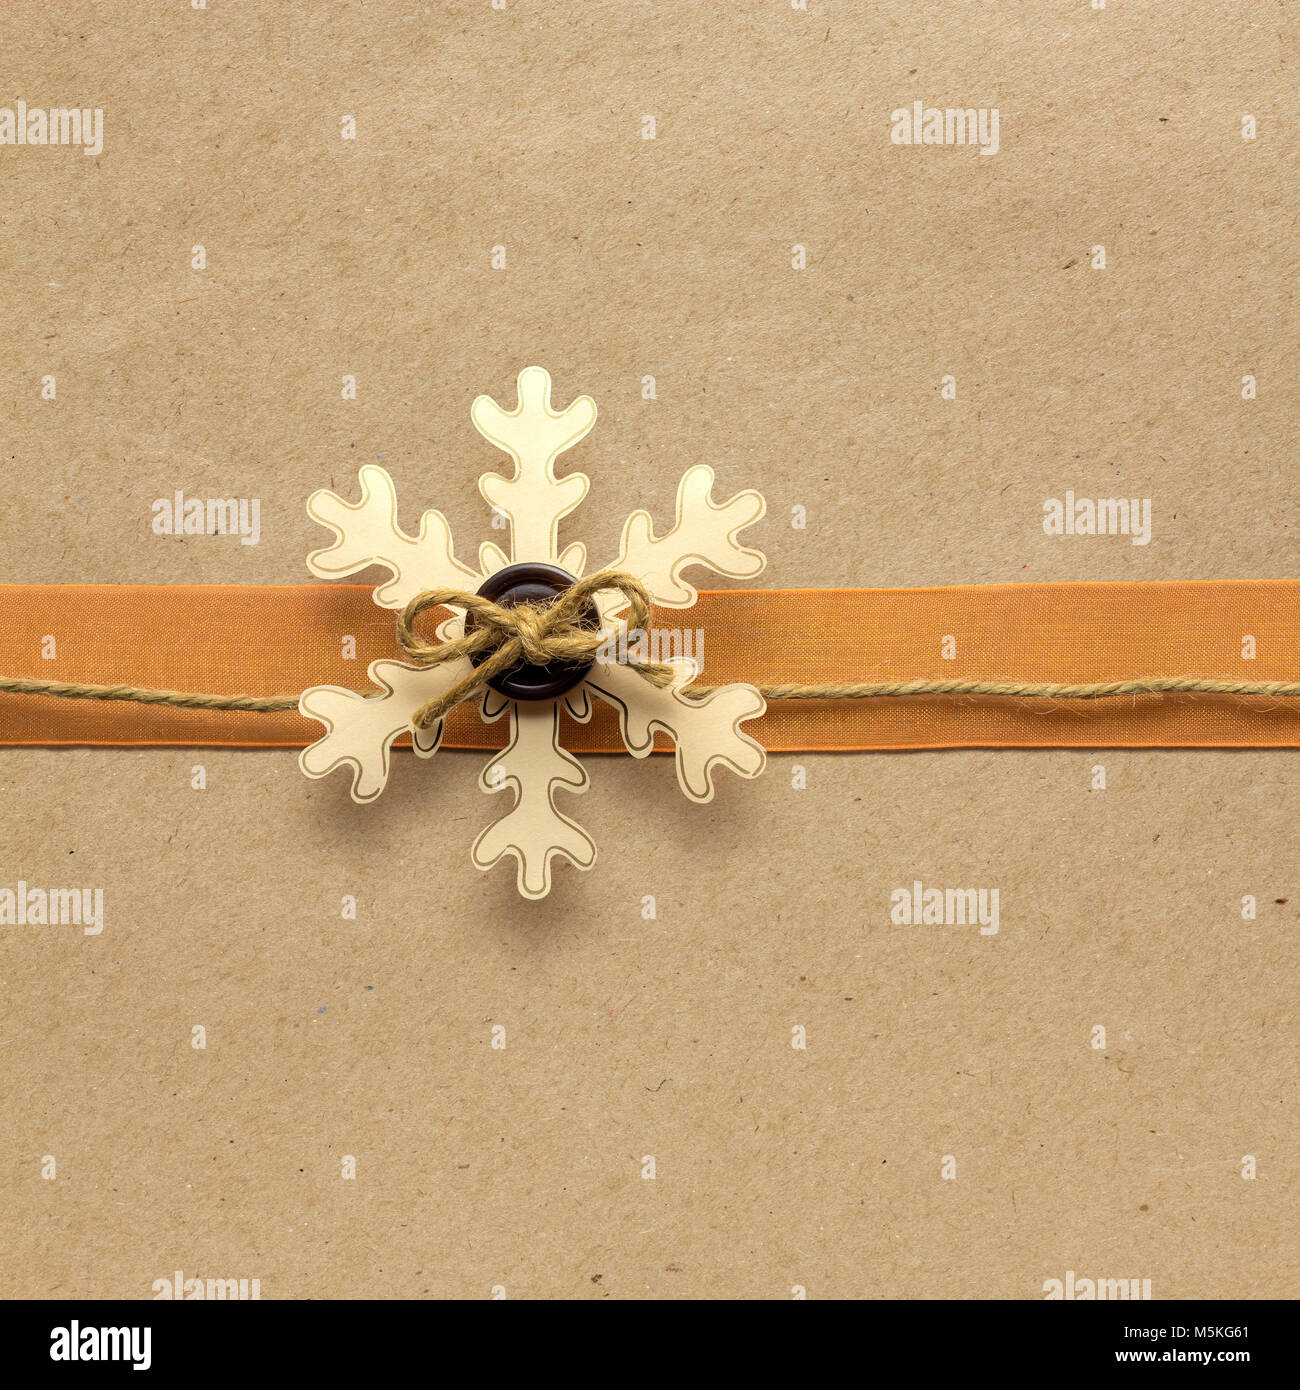 Noël créatif photo concept d'un flocon en papier sur fond brun. Banque D'Images